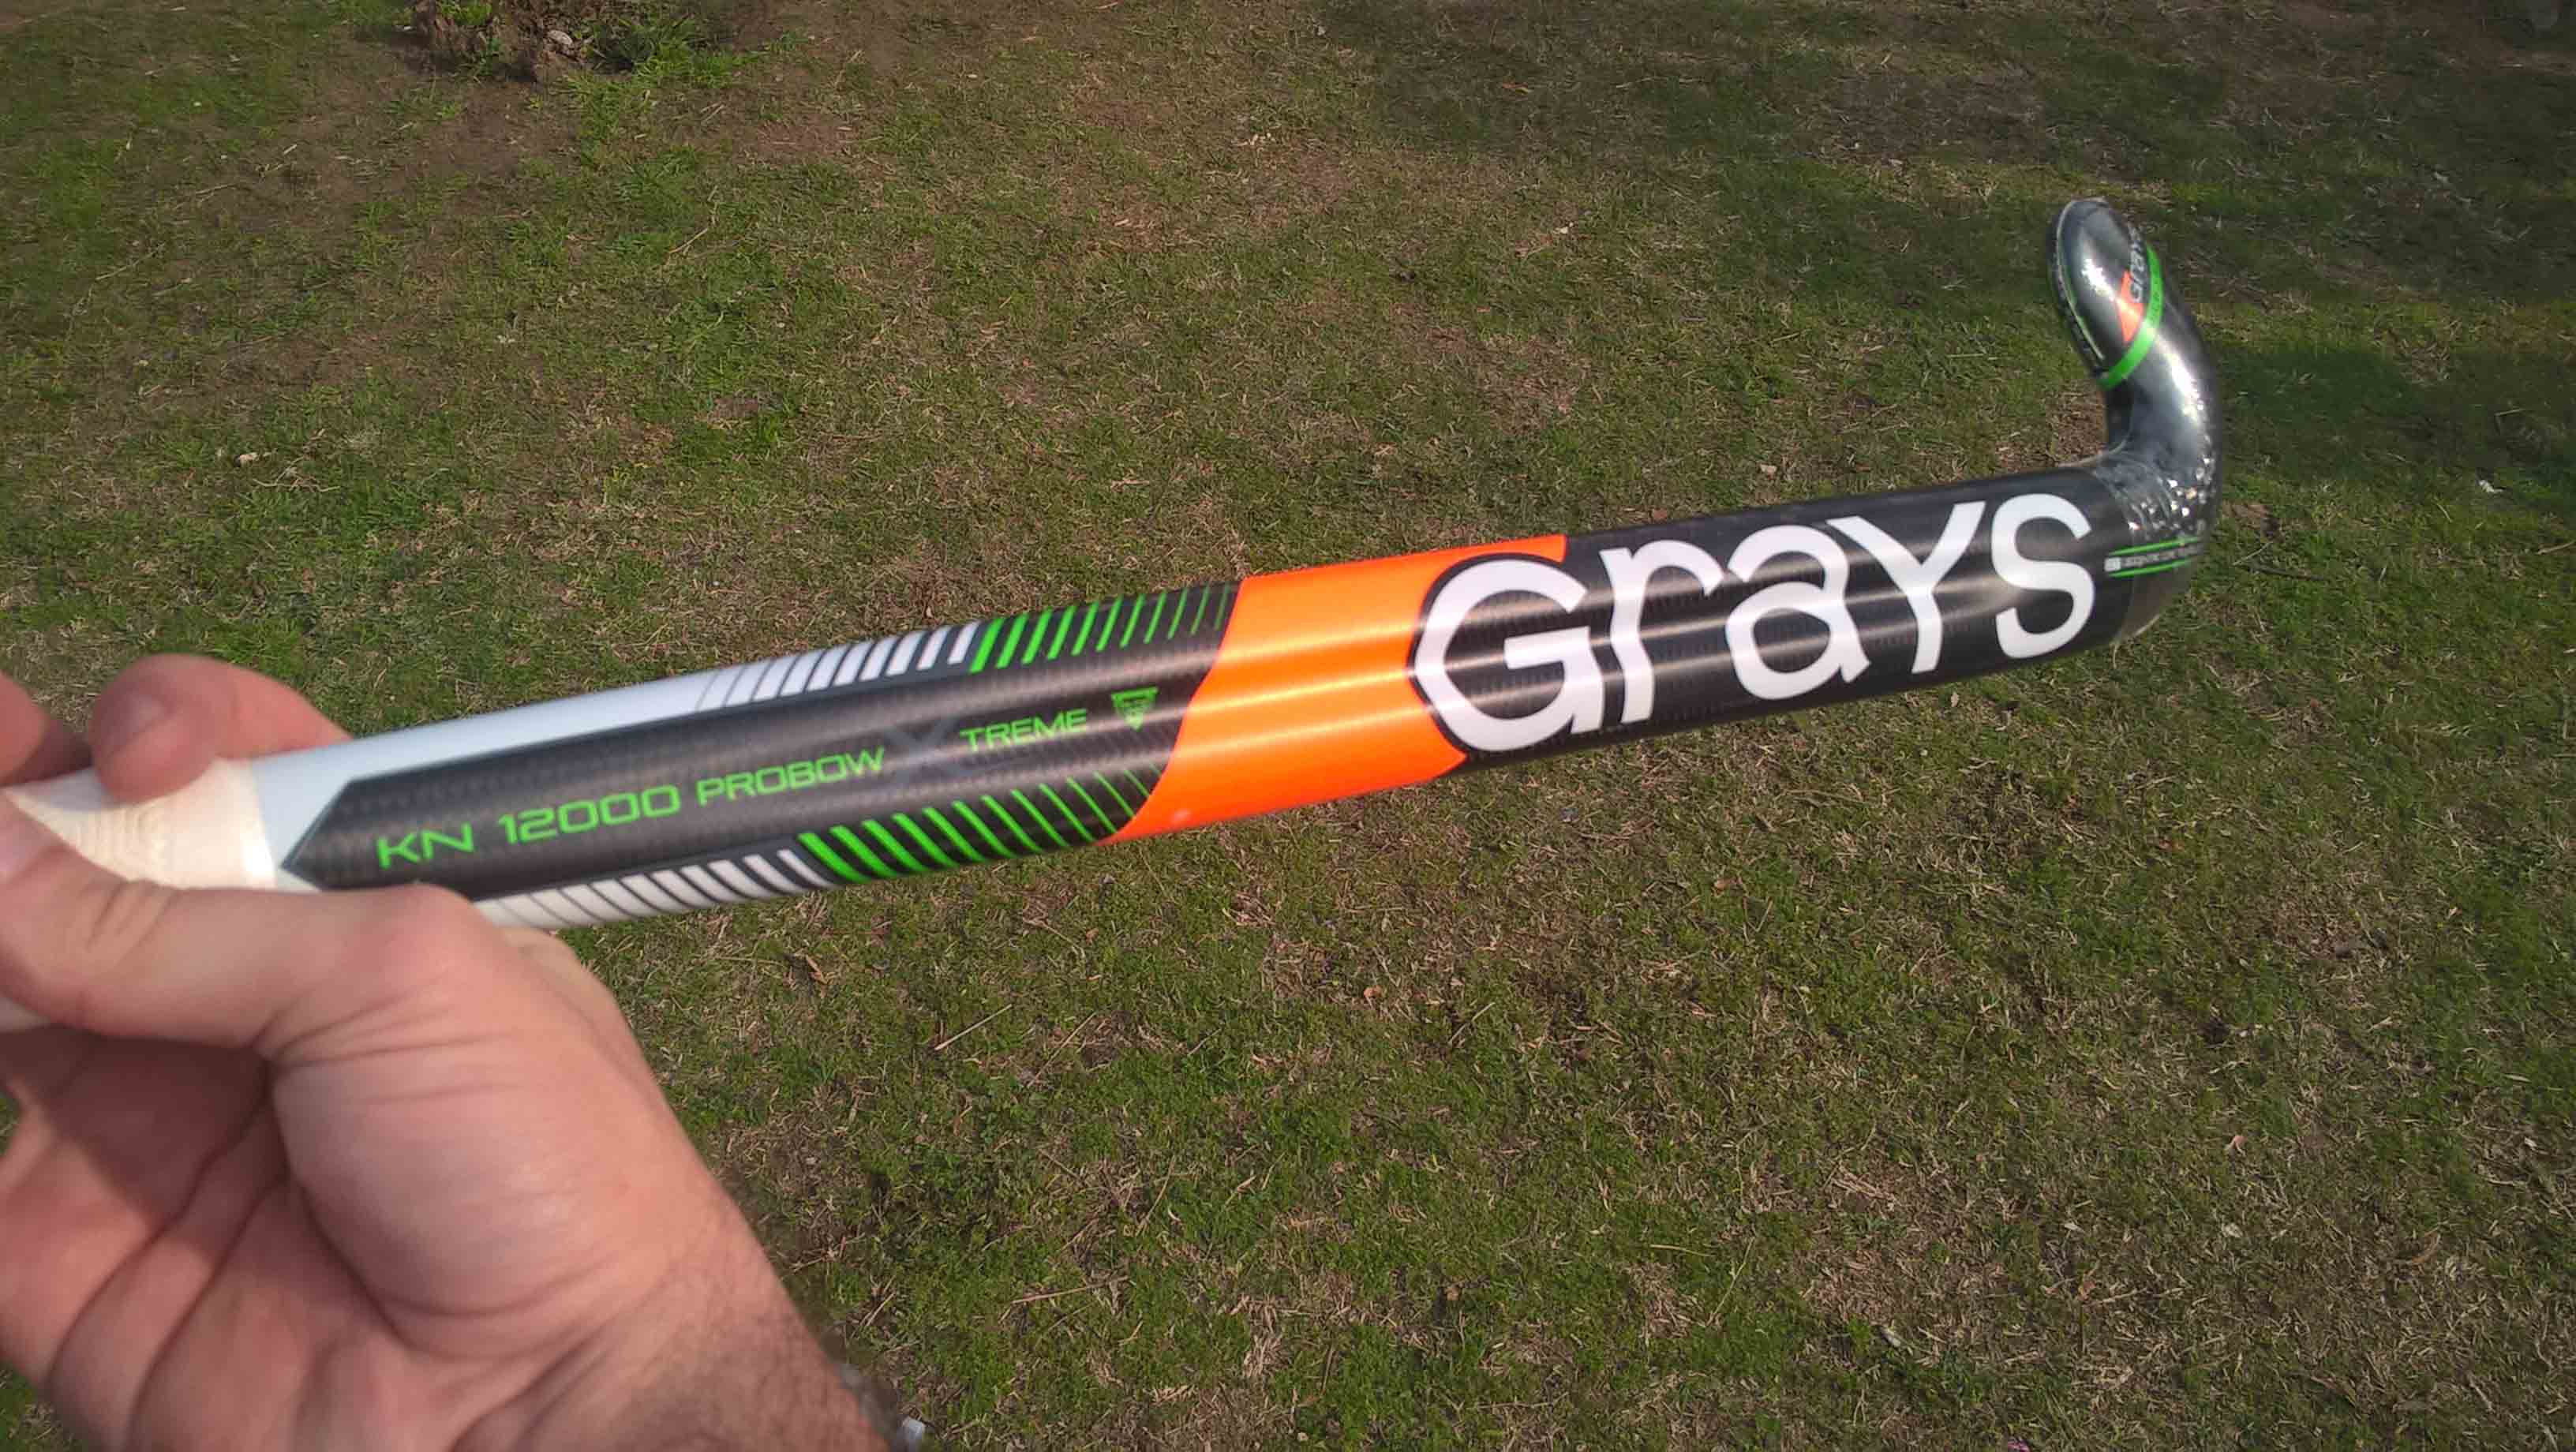 Grays KN12000 Probow Xtreme 2018-19 field hockey stick 